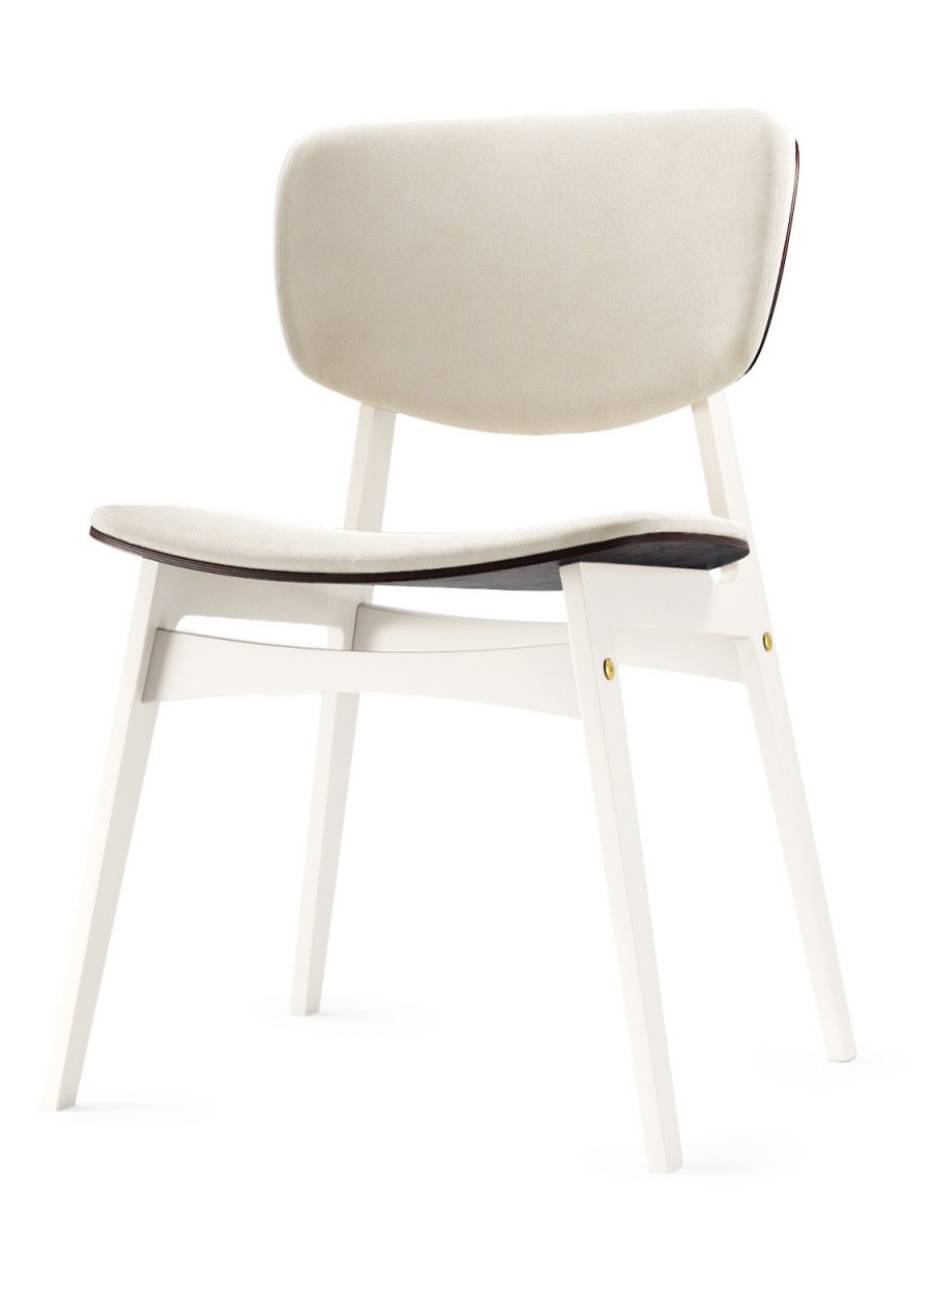 Купить белый стул sid в Raroom